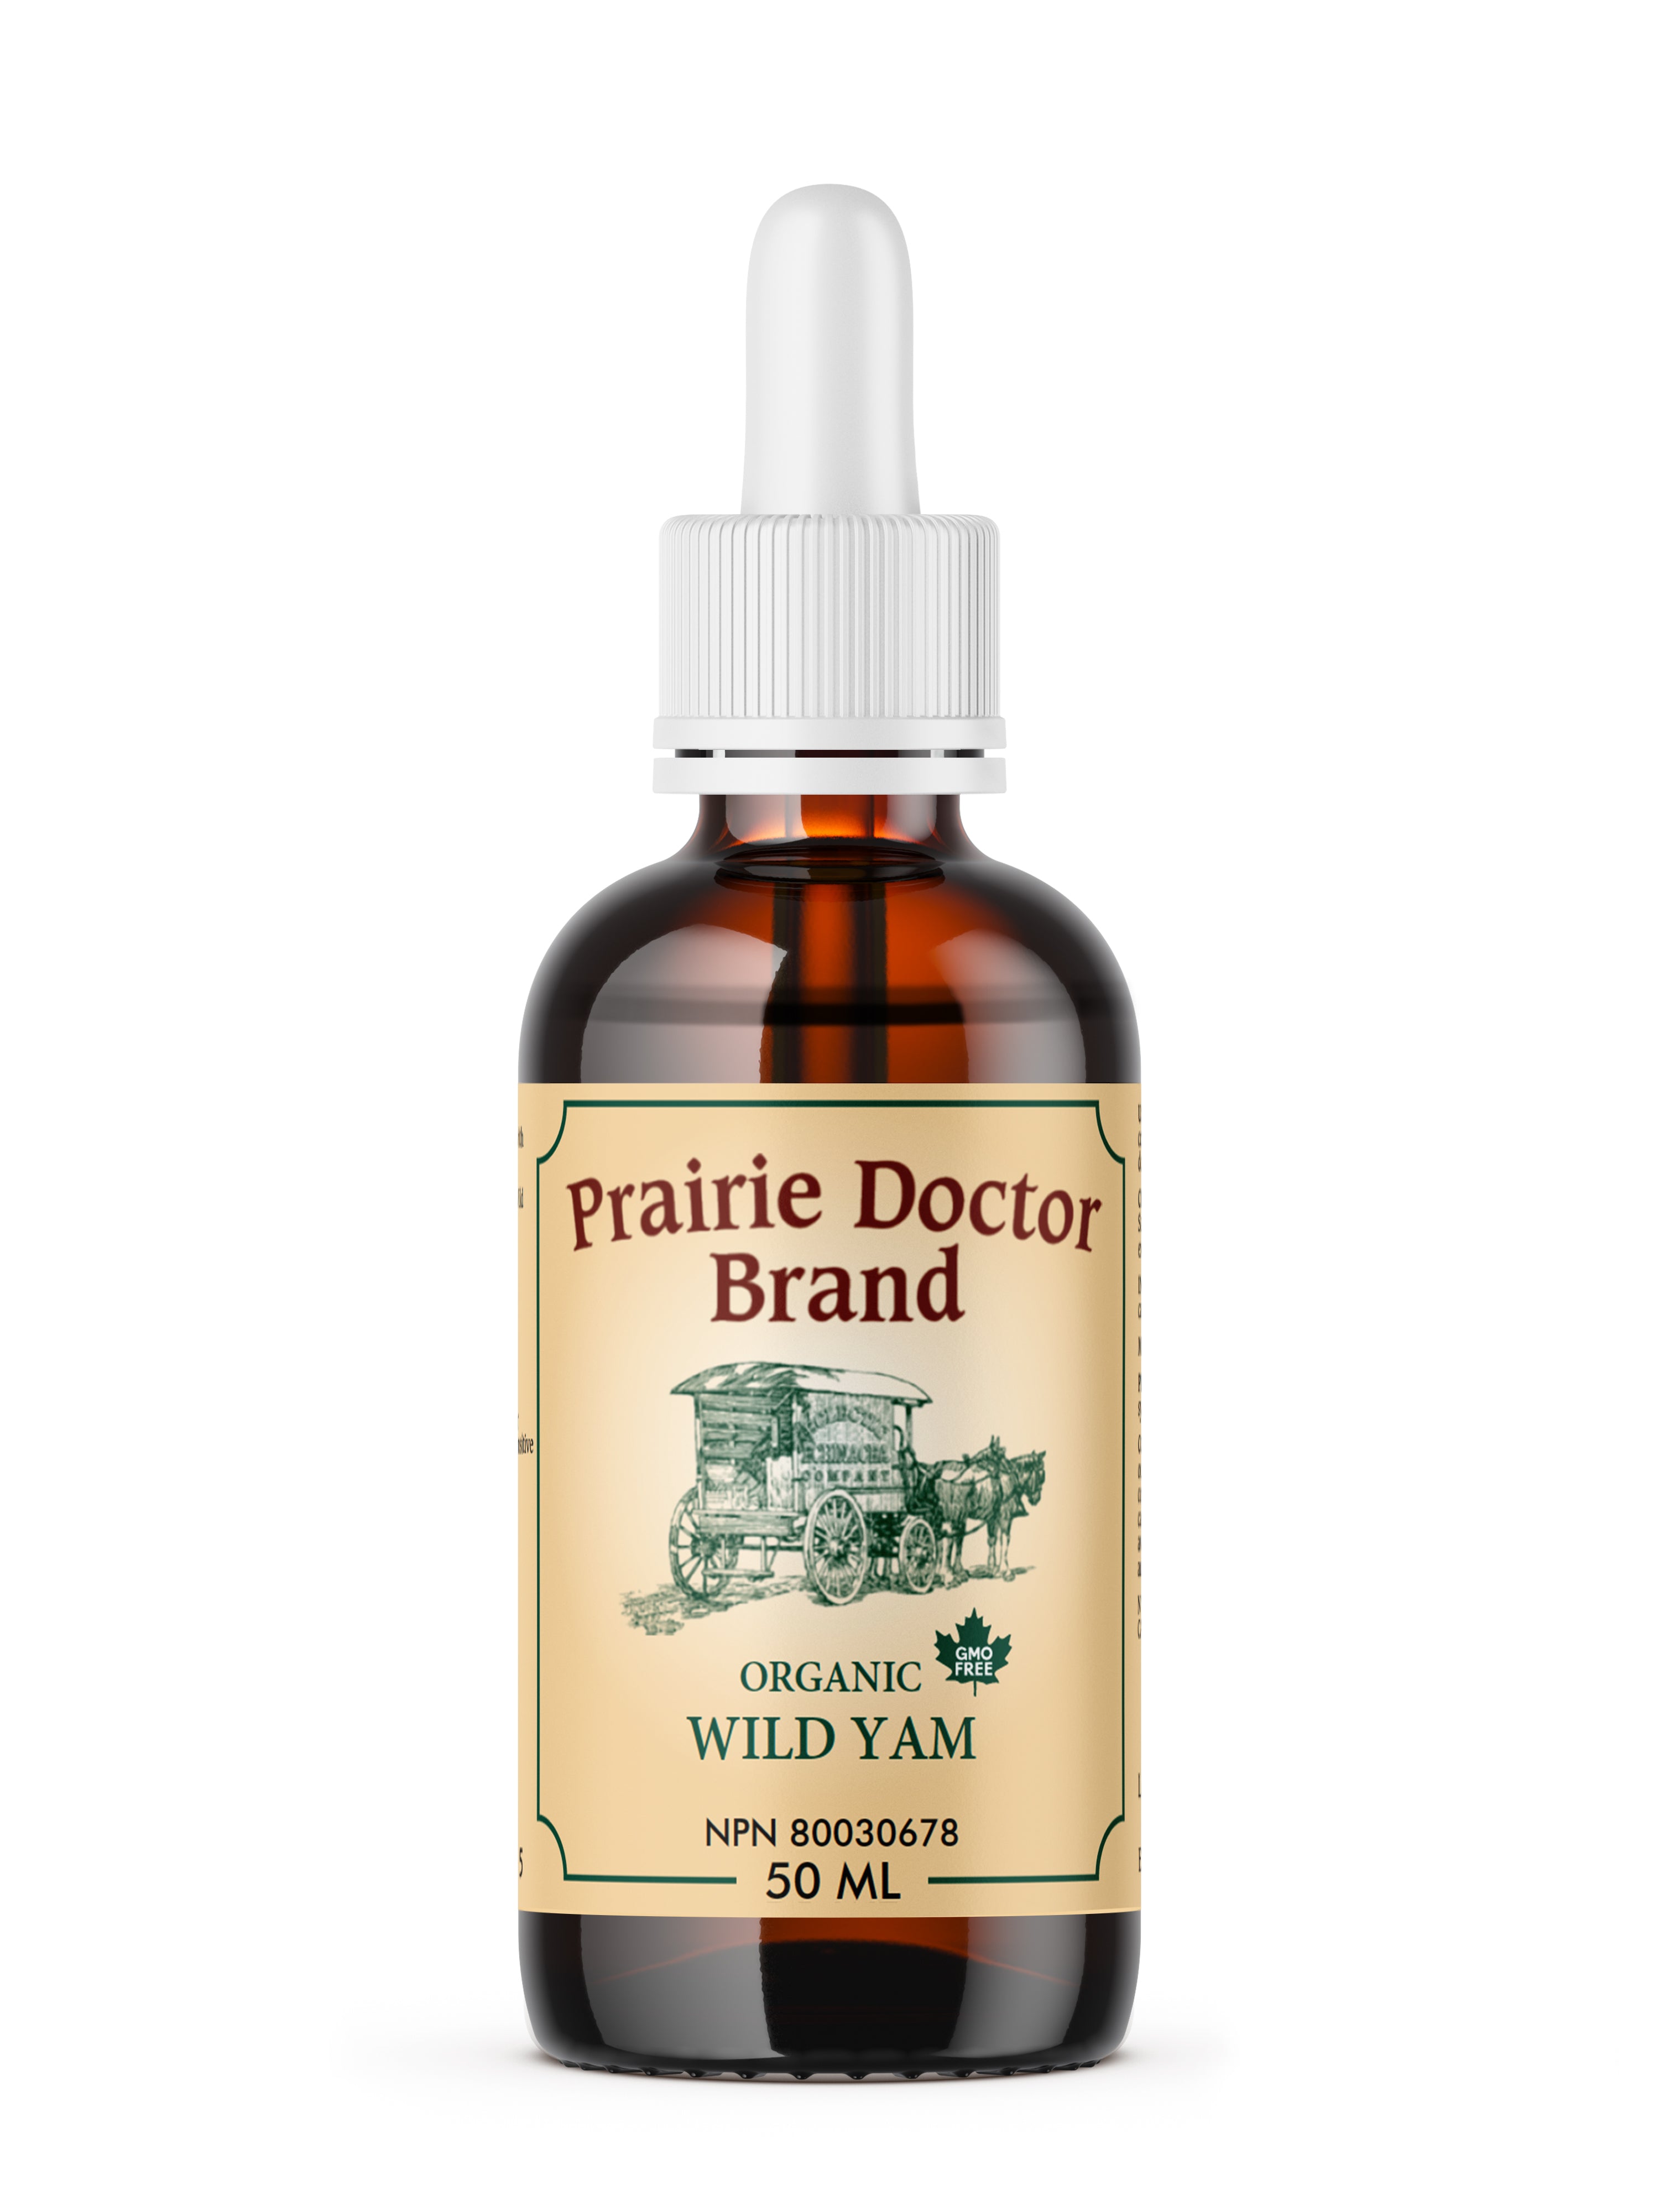 Prairie Doctor Wild Yam (50ml) - Lifestyle Markets